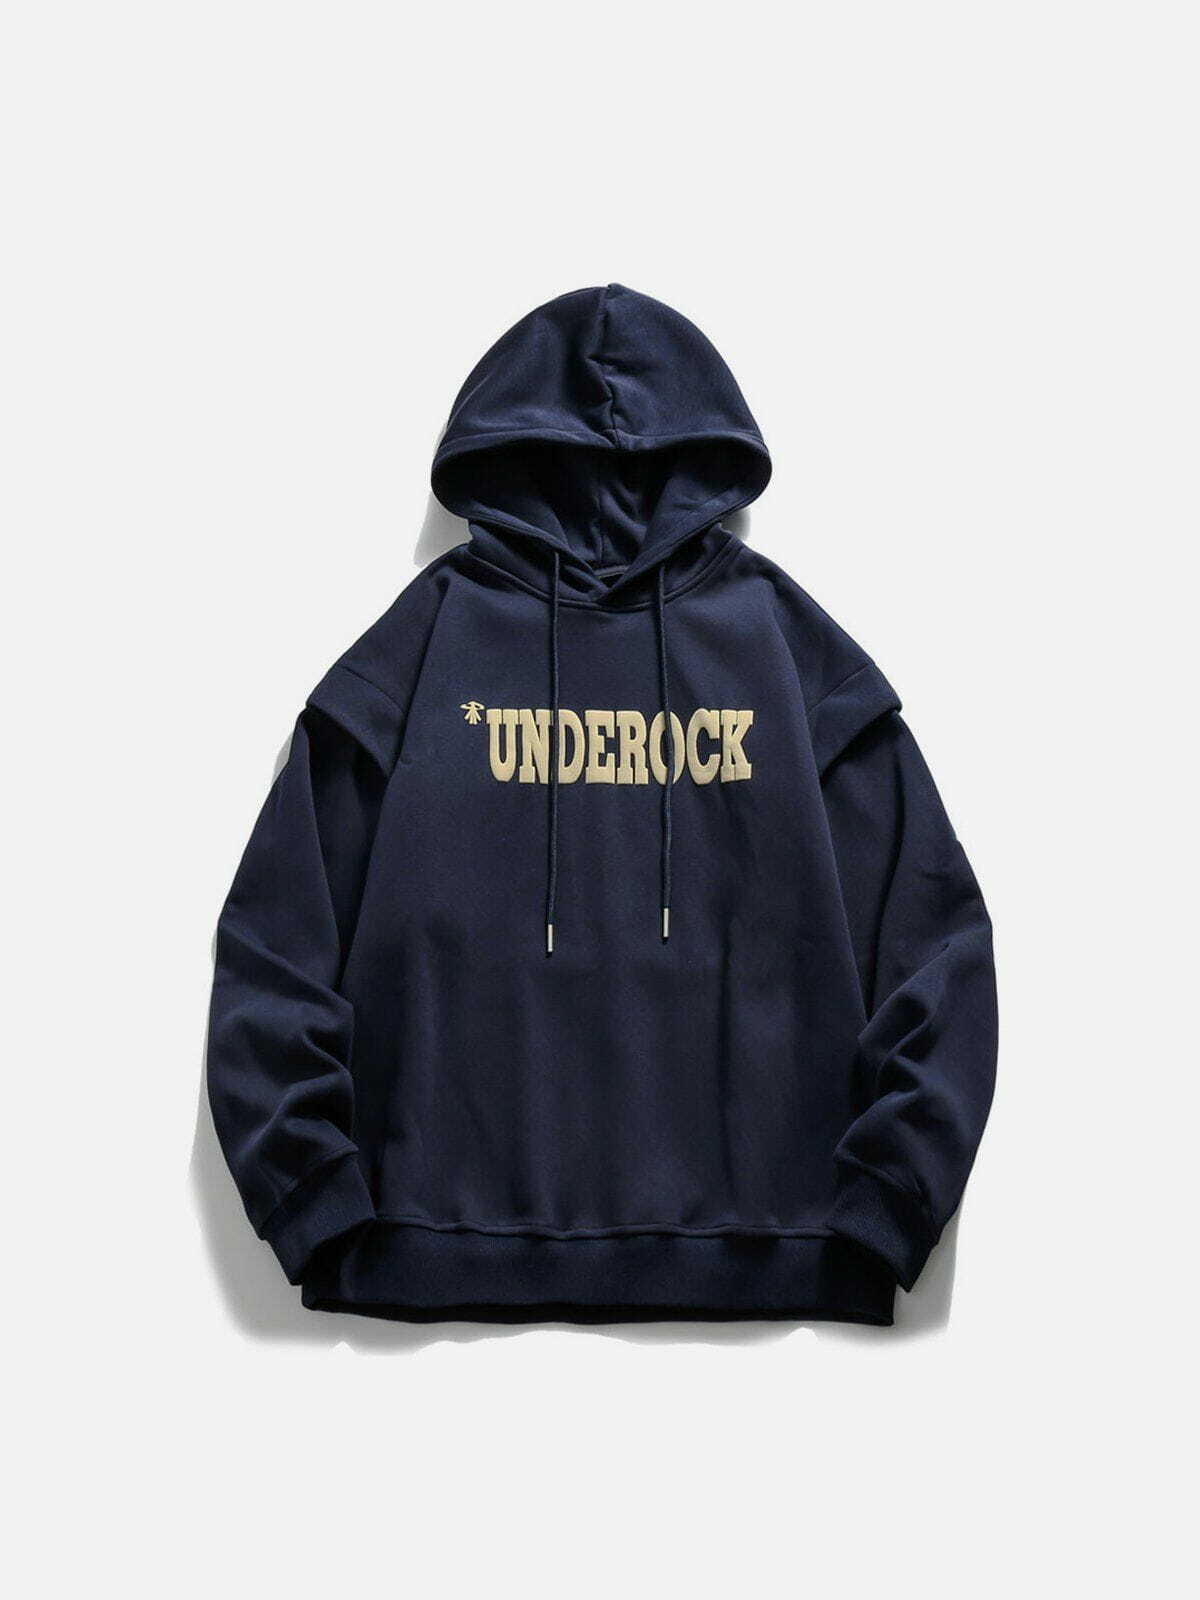 unique 'underock' hoodie edgy streetwear essential 1103